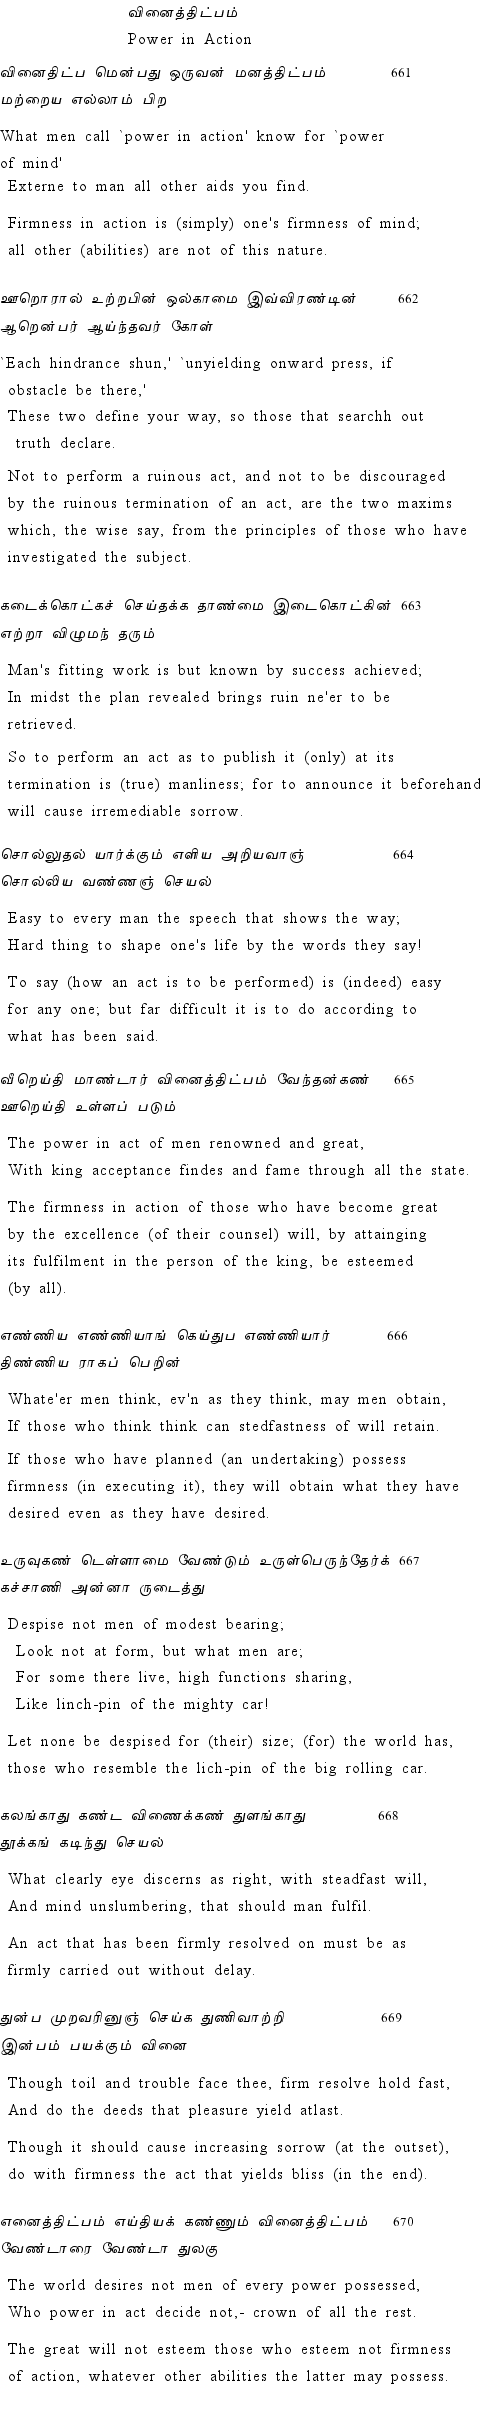 Text of Adhikaram 67